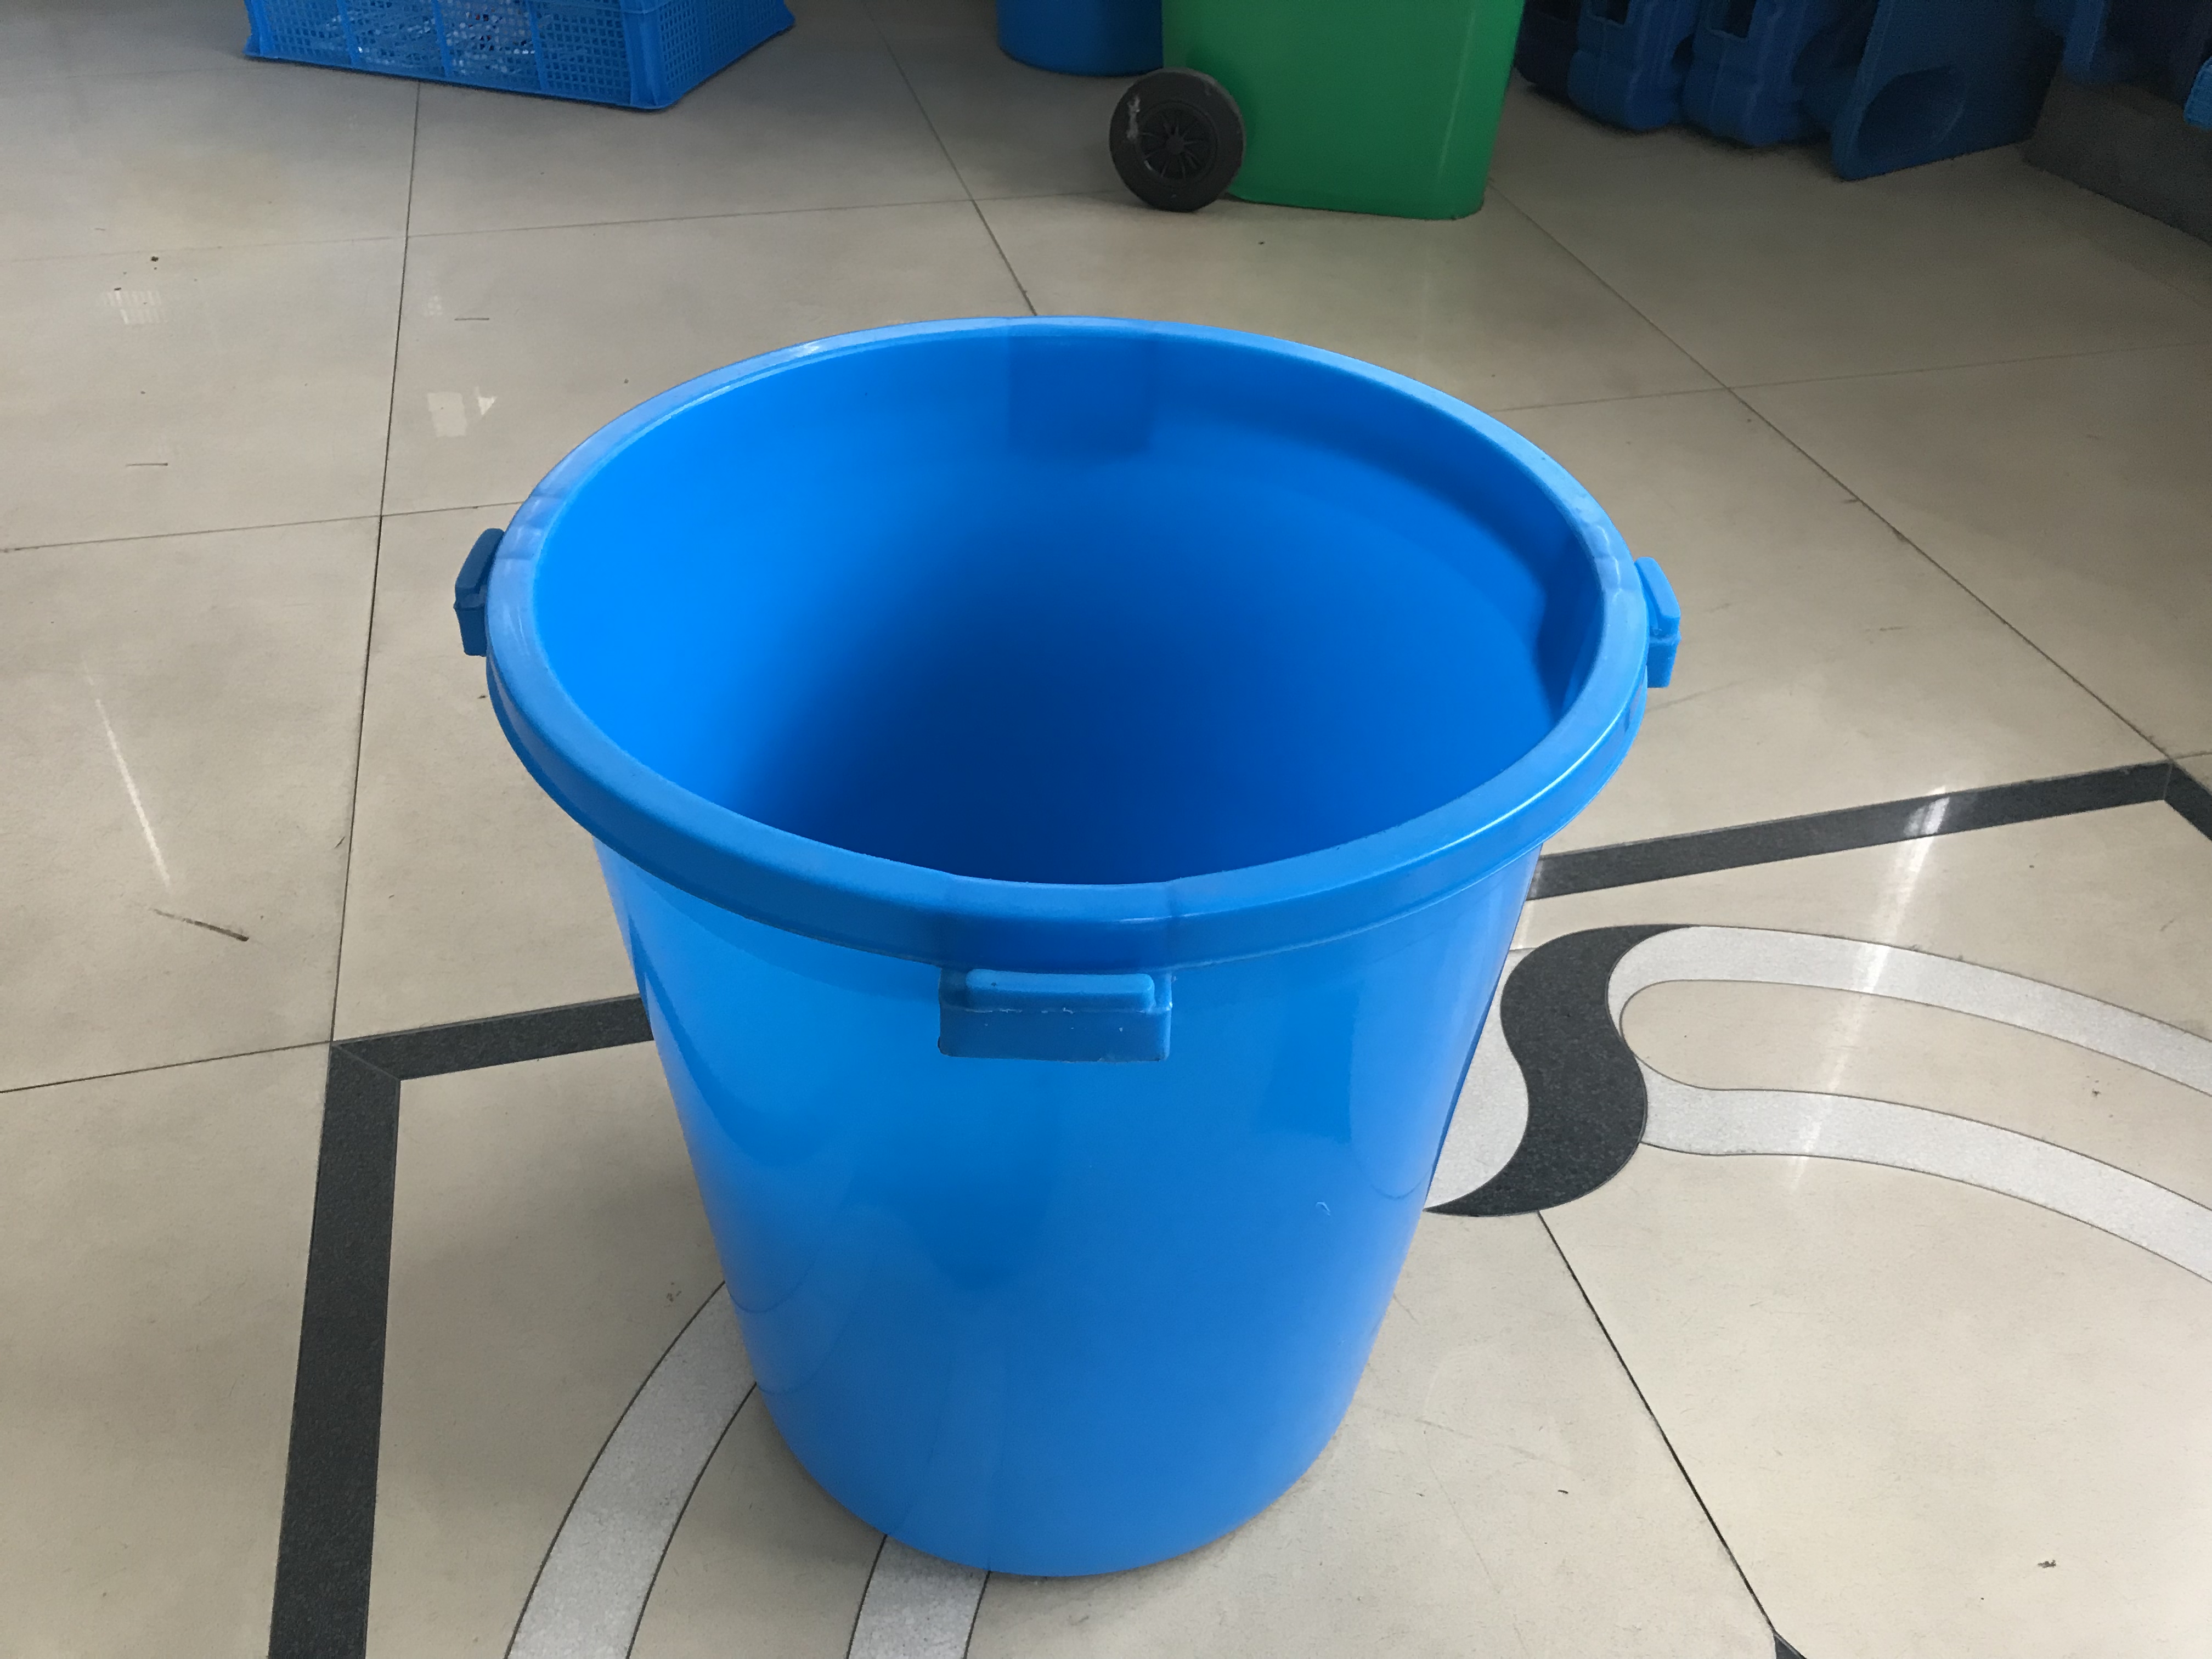 塑料周转箱|上海塑料箱厂报价表|上海塑料箱批发价格|上海塑料箱厂家直销 食品级塑料周转箱 食品级塑料圆桶图片